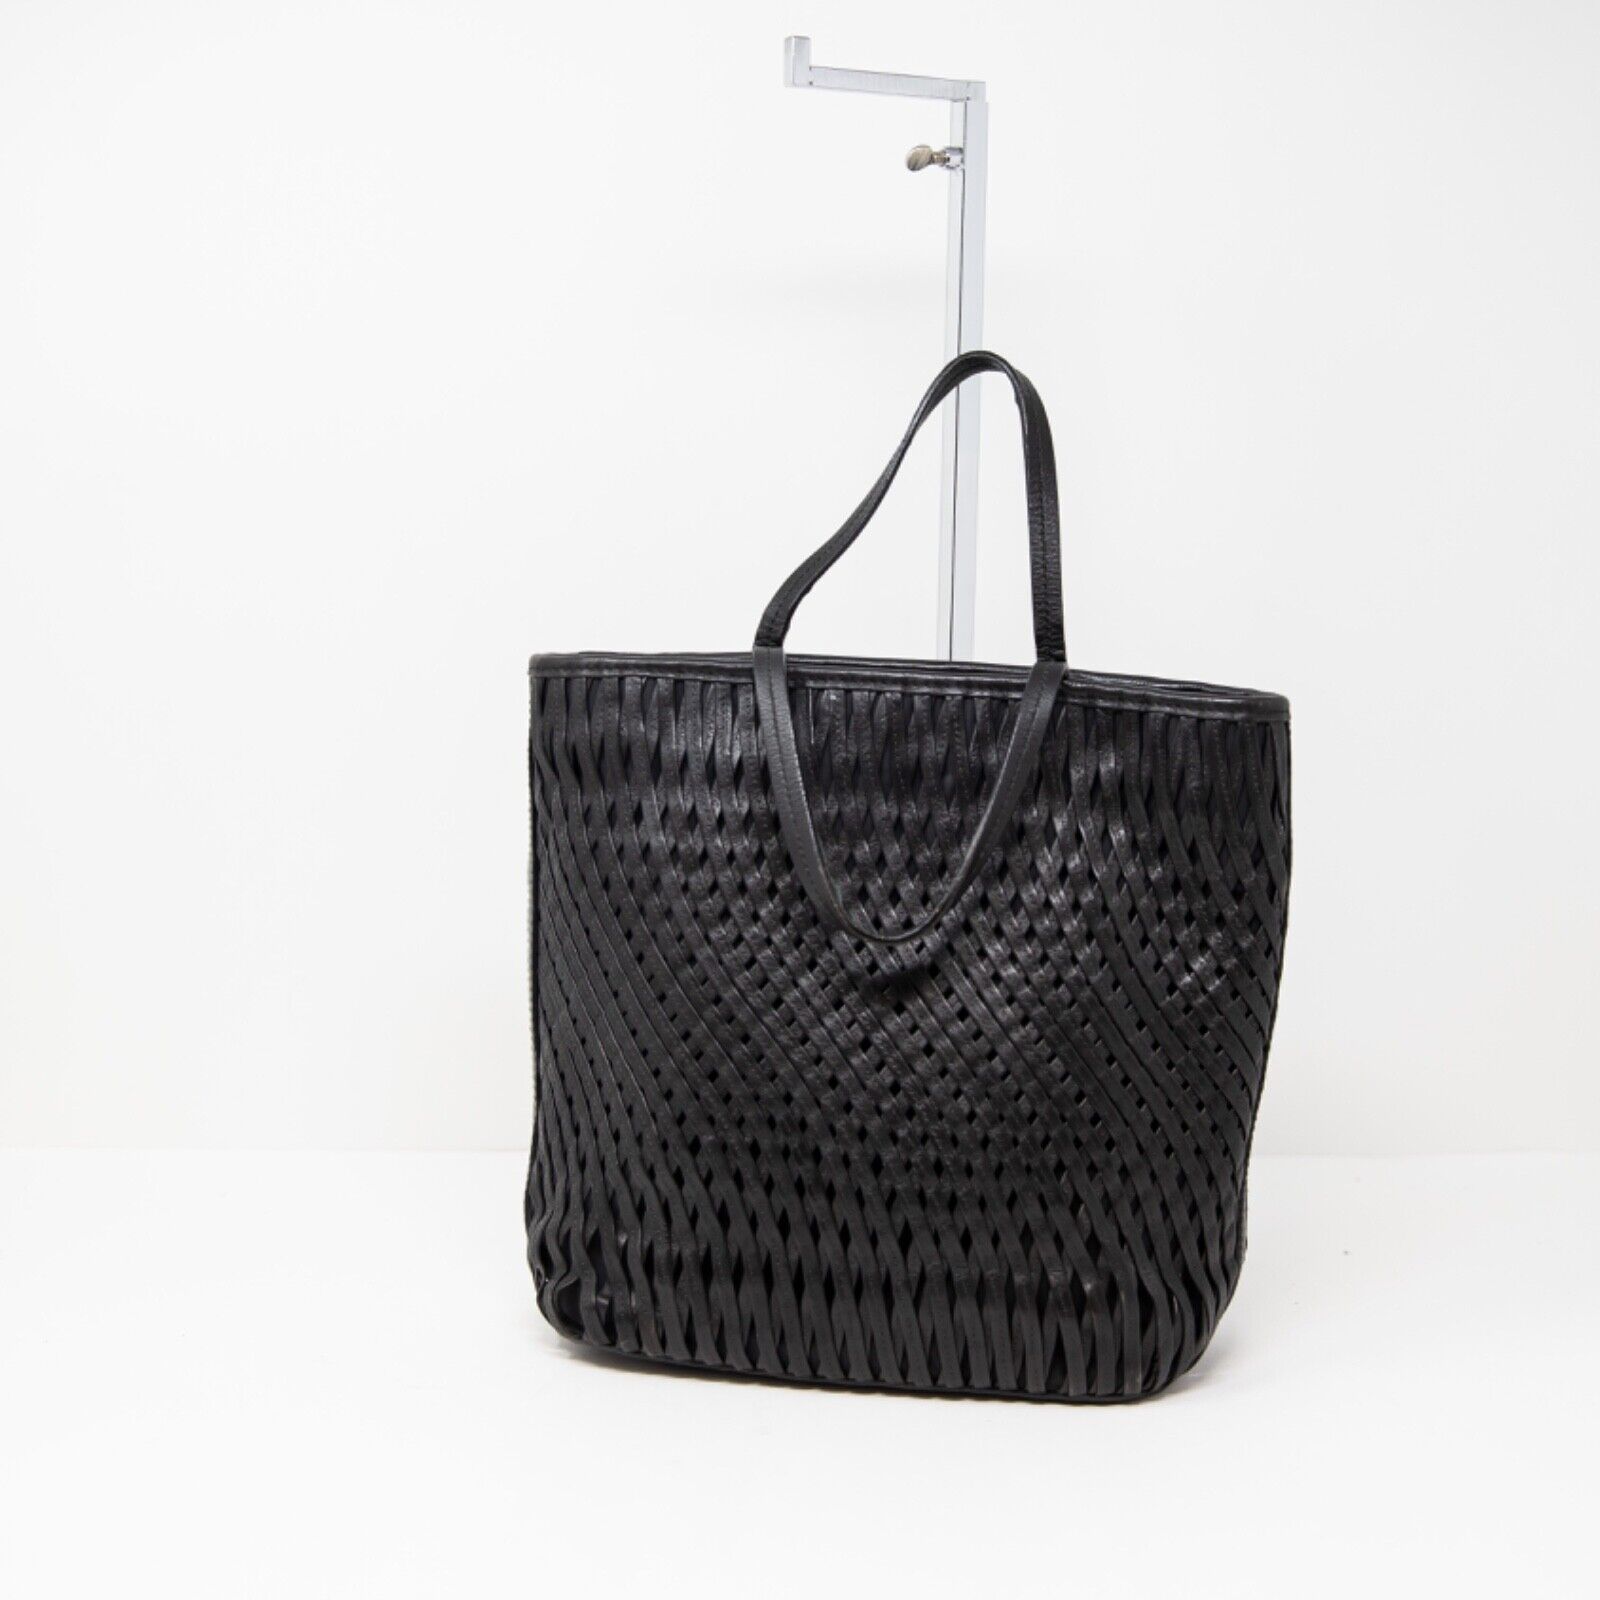 Jil Sander Genuine Leather Woven Knit Shoulder Purse Bag Tote Solid Black Medium